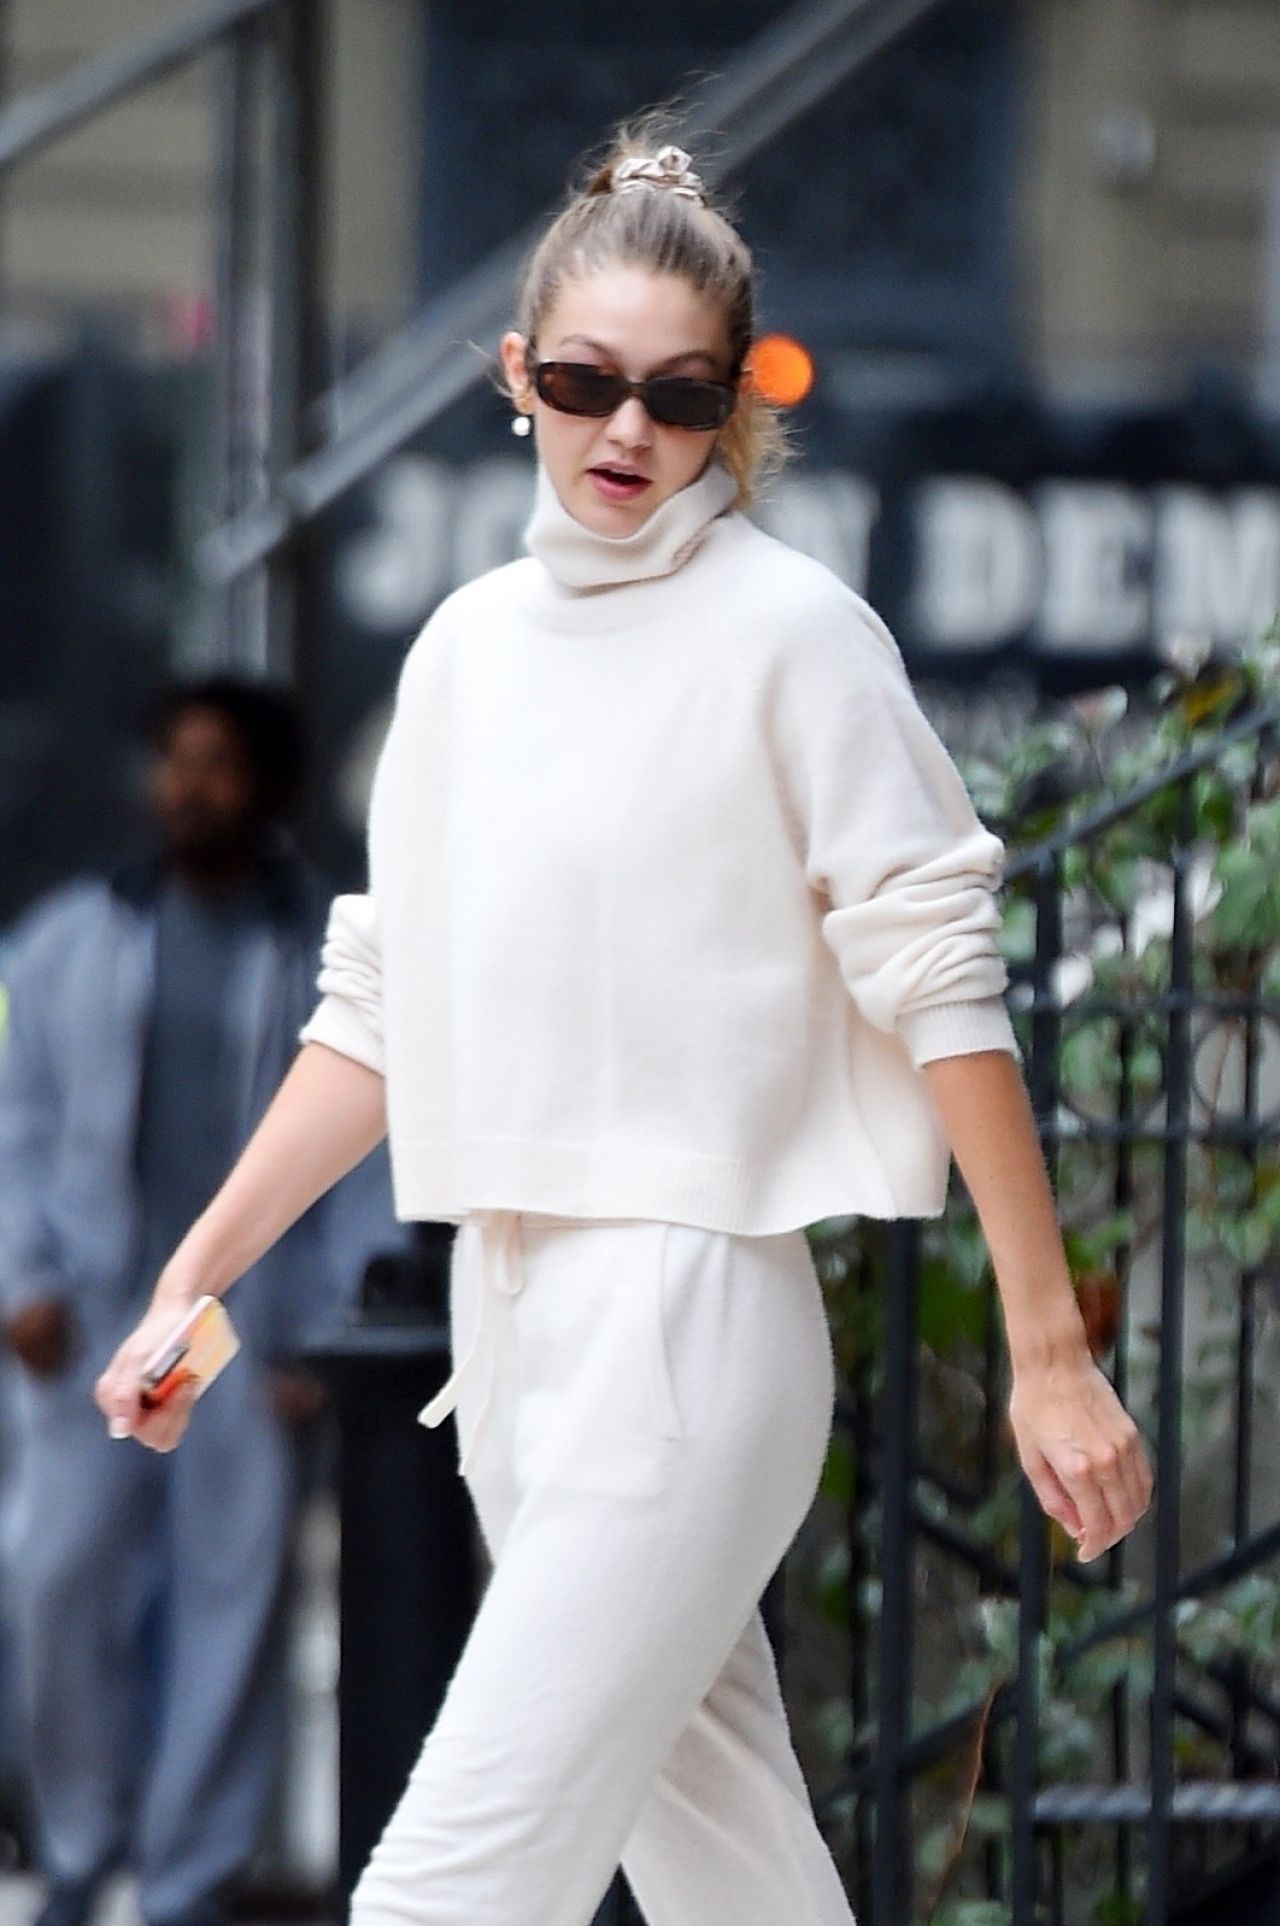 超模吉吉·哈迪德曼哈顿街头时尚拍照,她的娇艳让人心动